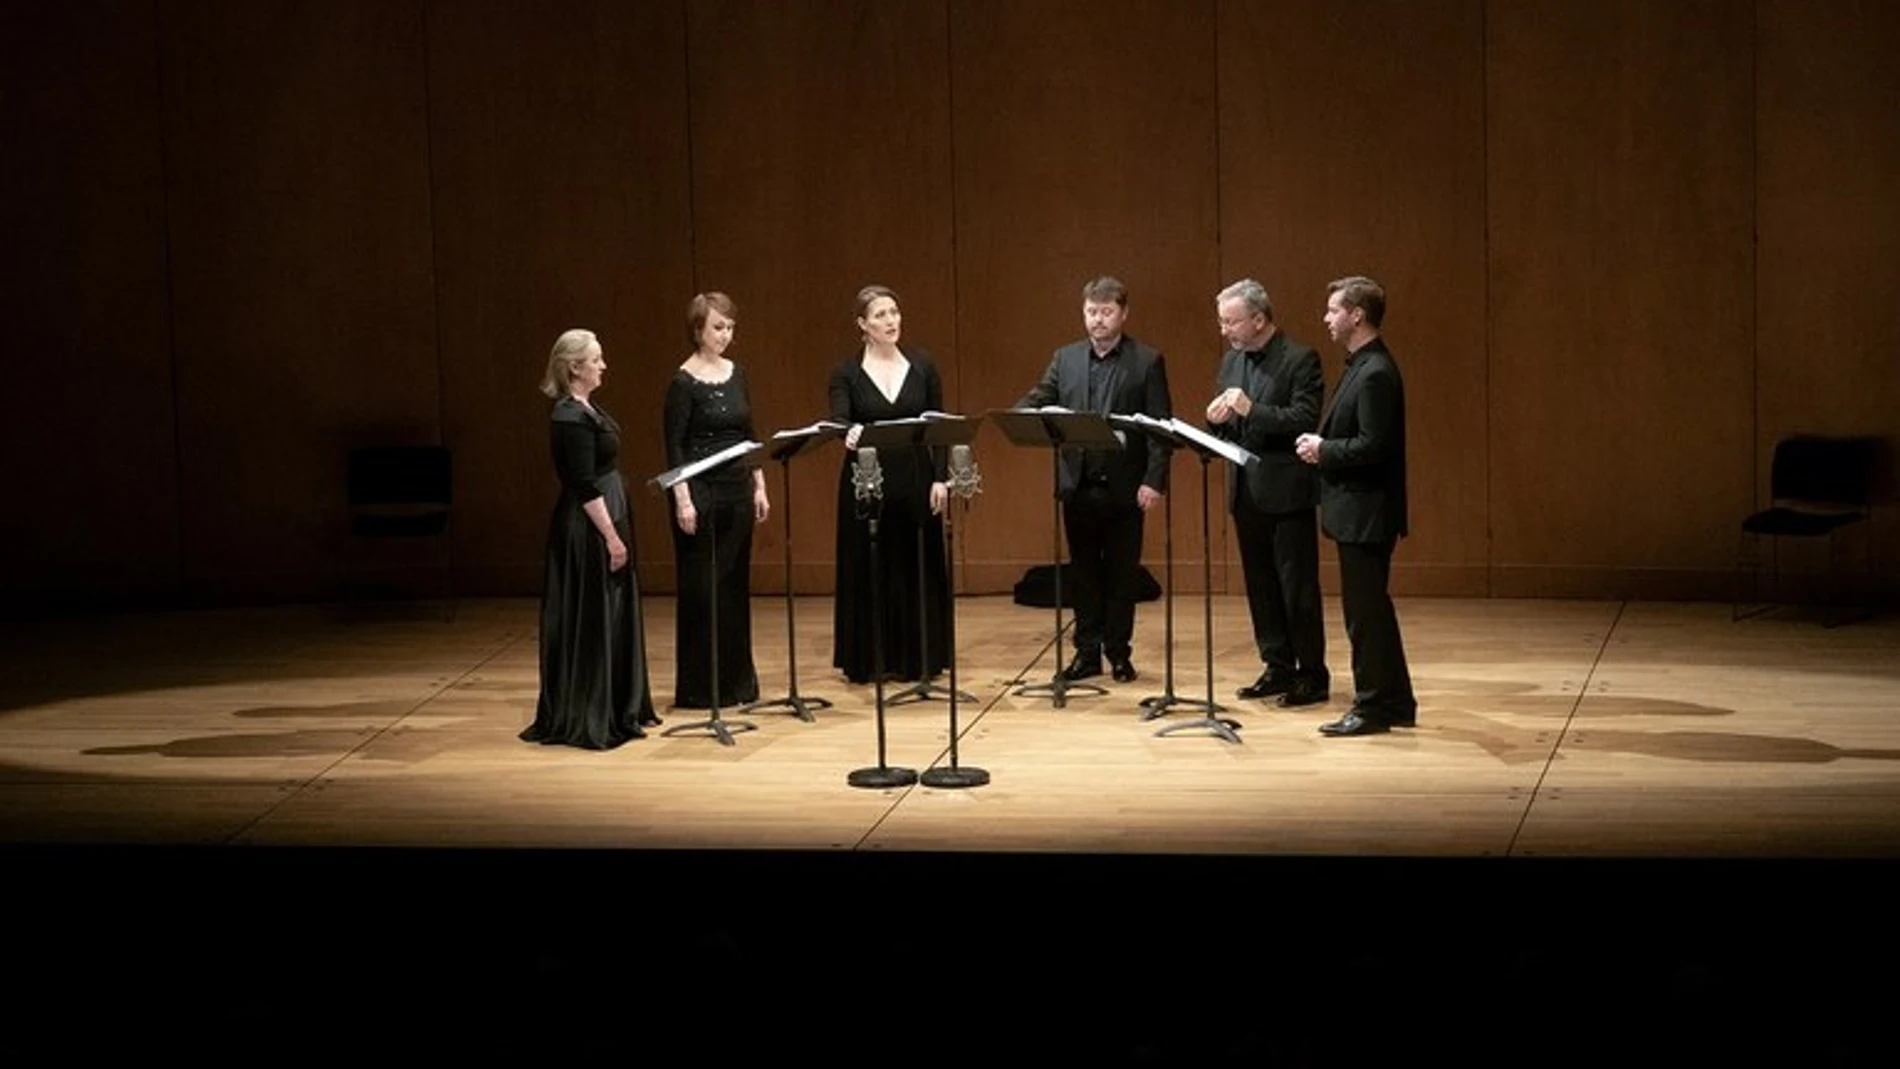 El coro del Auditorio Nacional que interpreta "Les Arts Florissants" está formado, entre otros, por los sopranos Ellen Giacone, Maud Gnidzaz y Juliette Perret